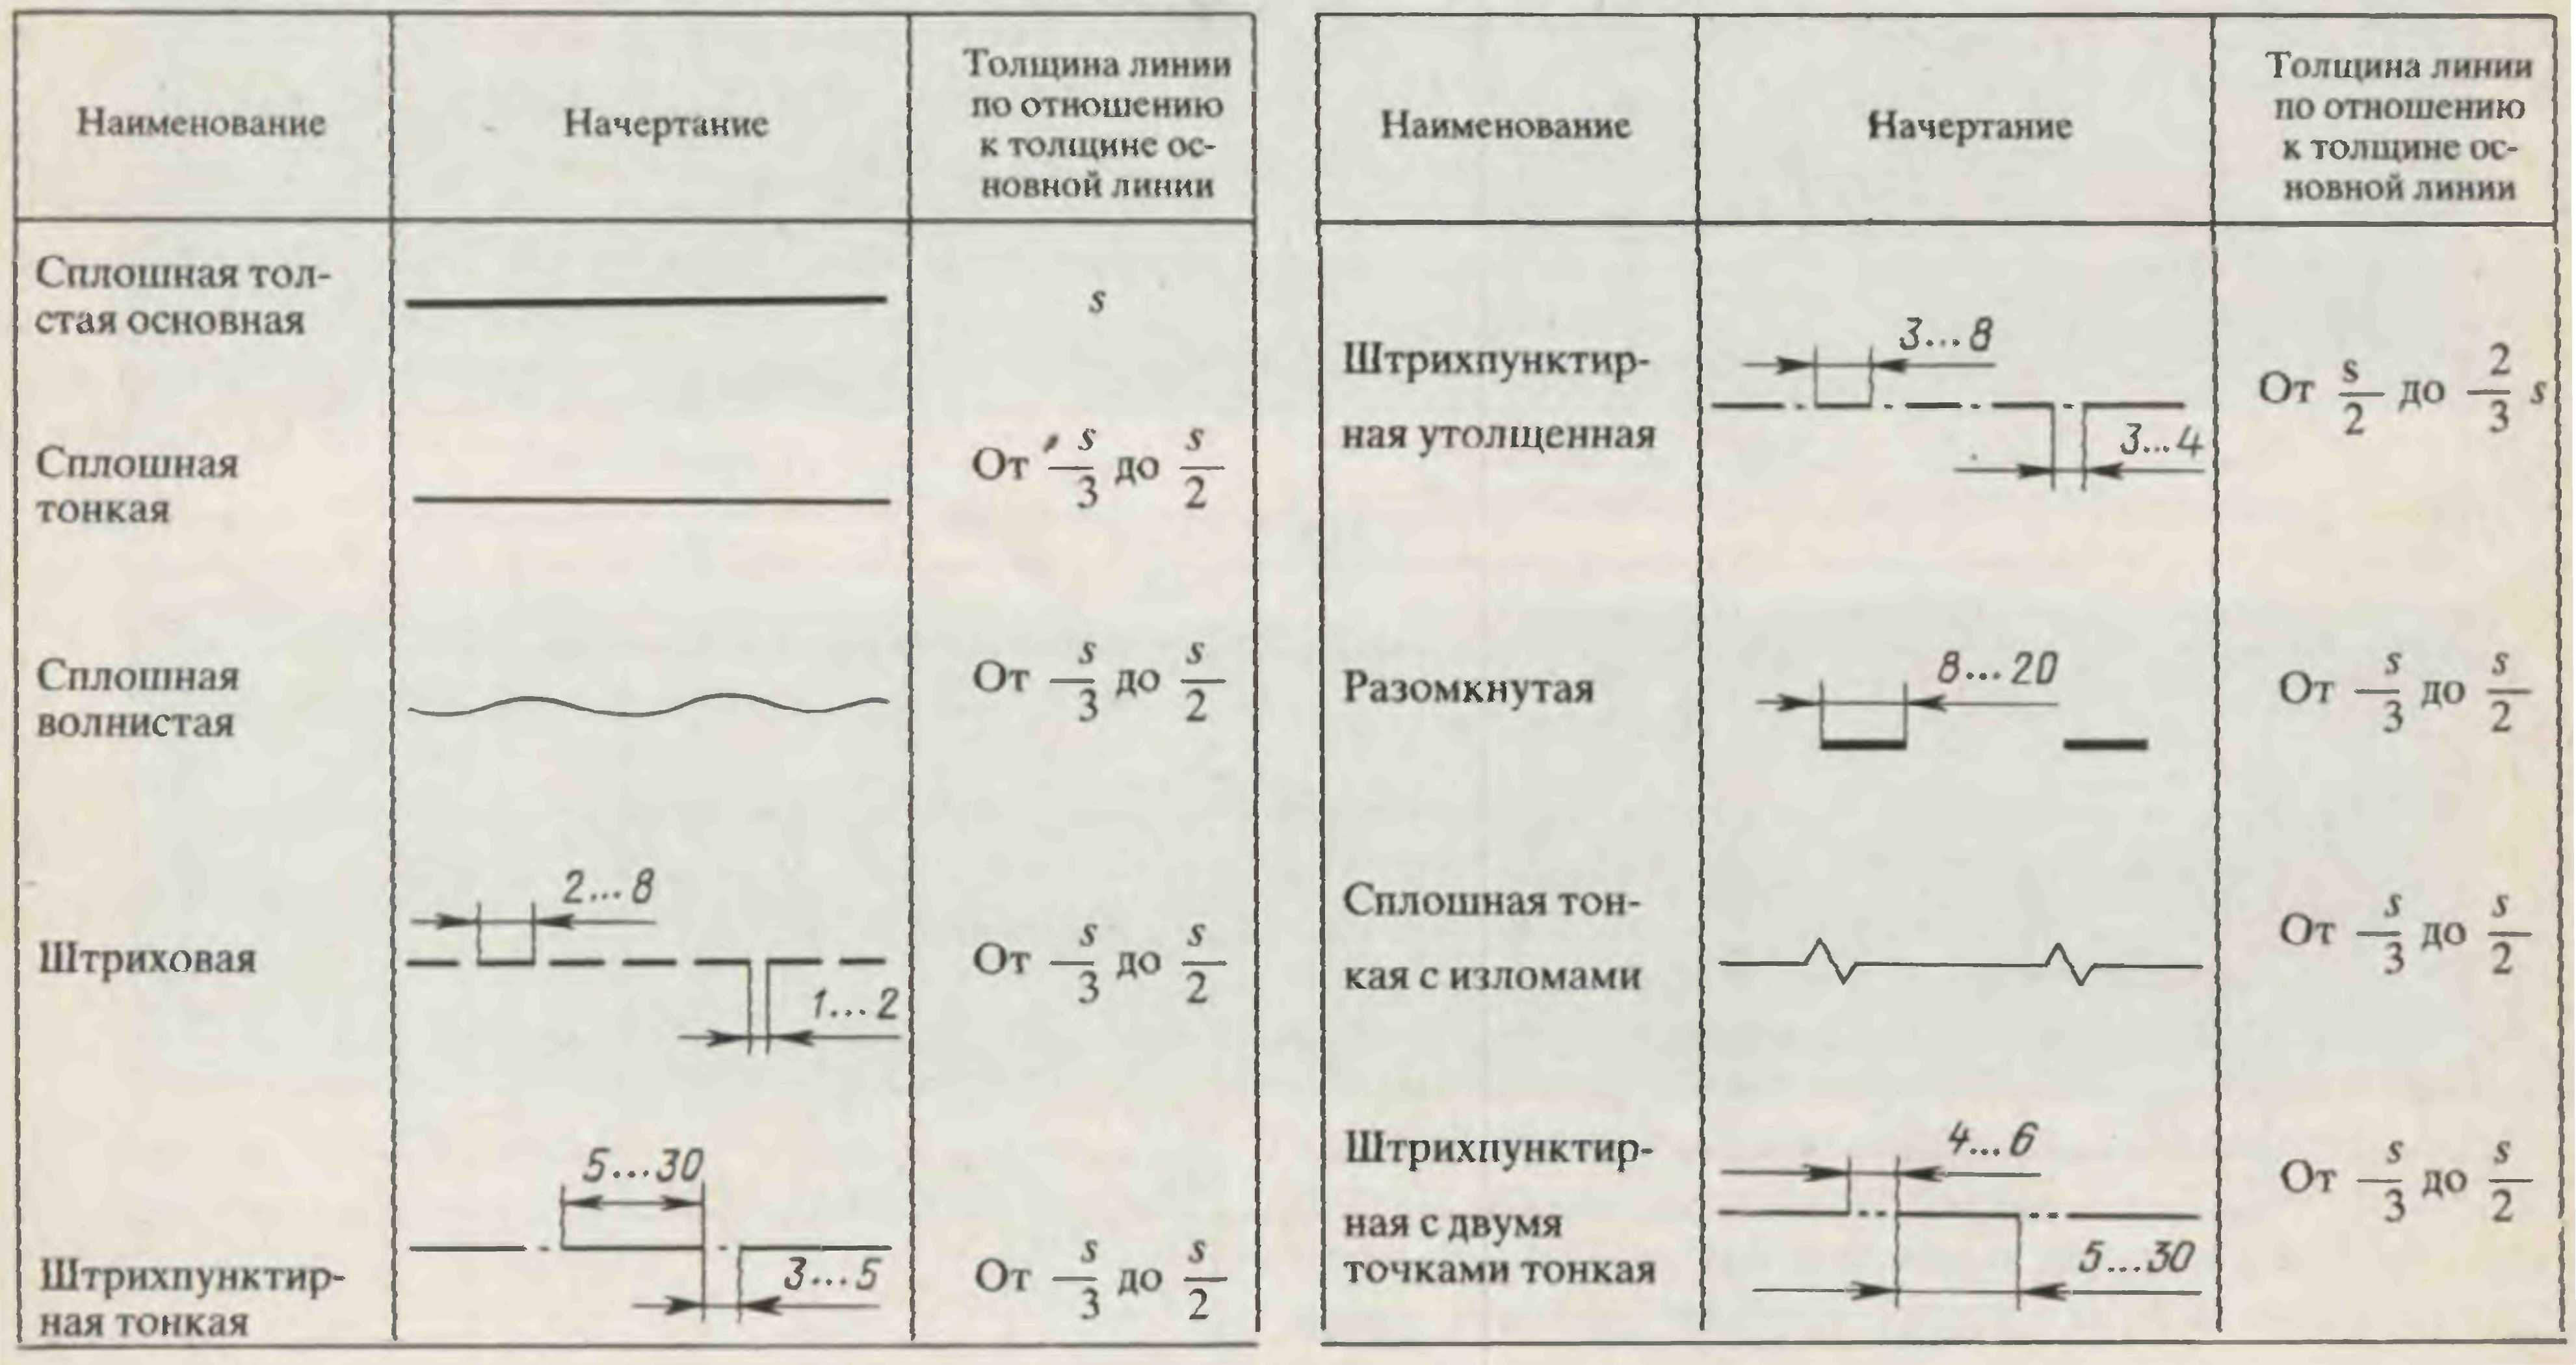 Методические указания для лабораторной работы 1 по дисциплине «Инженерная графика» (по разделу «Геометрическое черчение») 2 курс